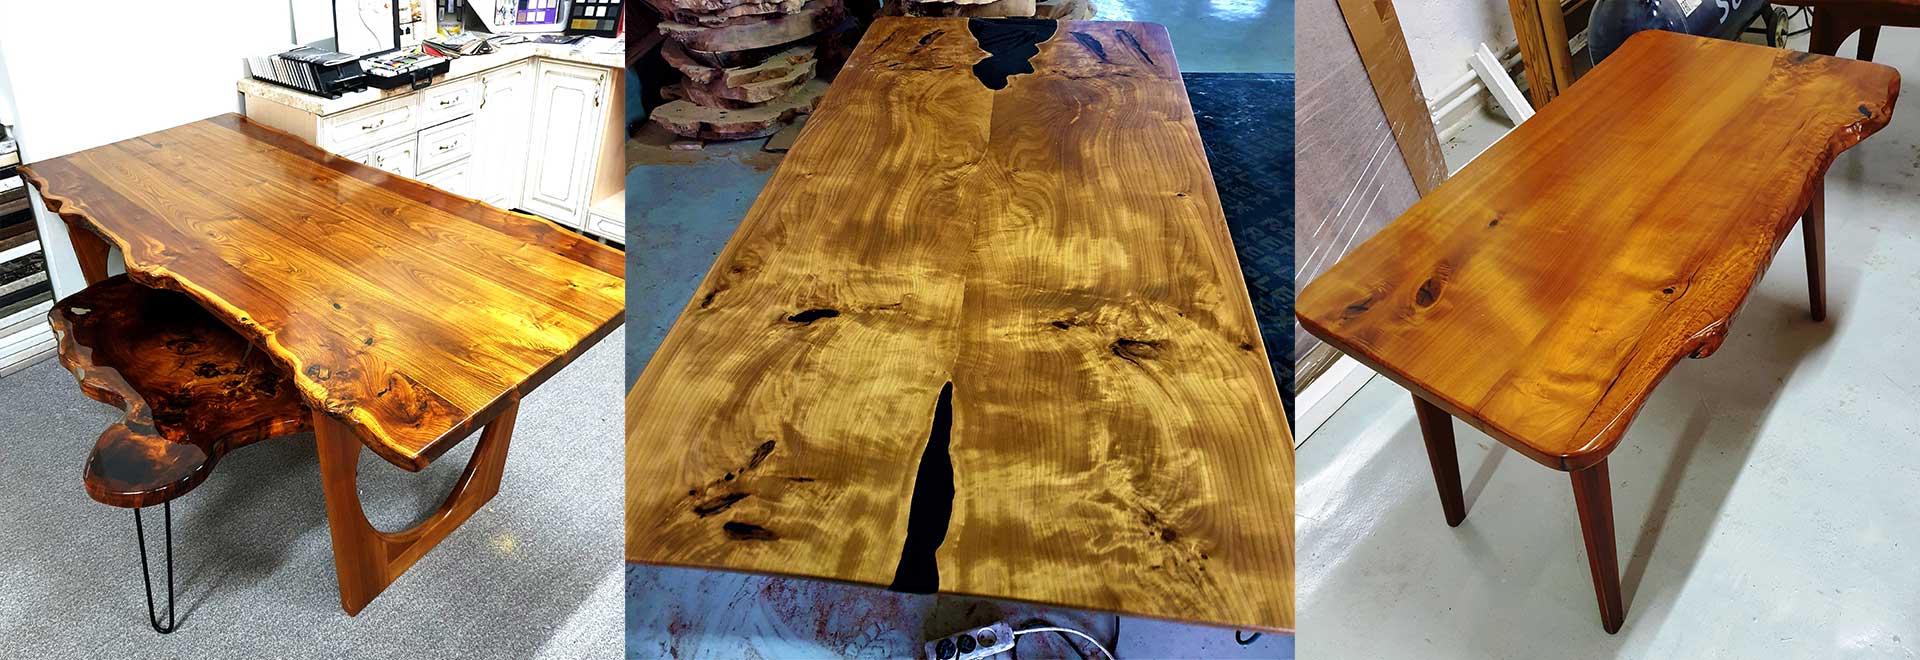 столы изготовленные из слэба дерева